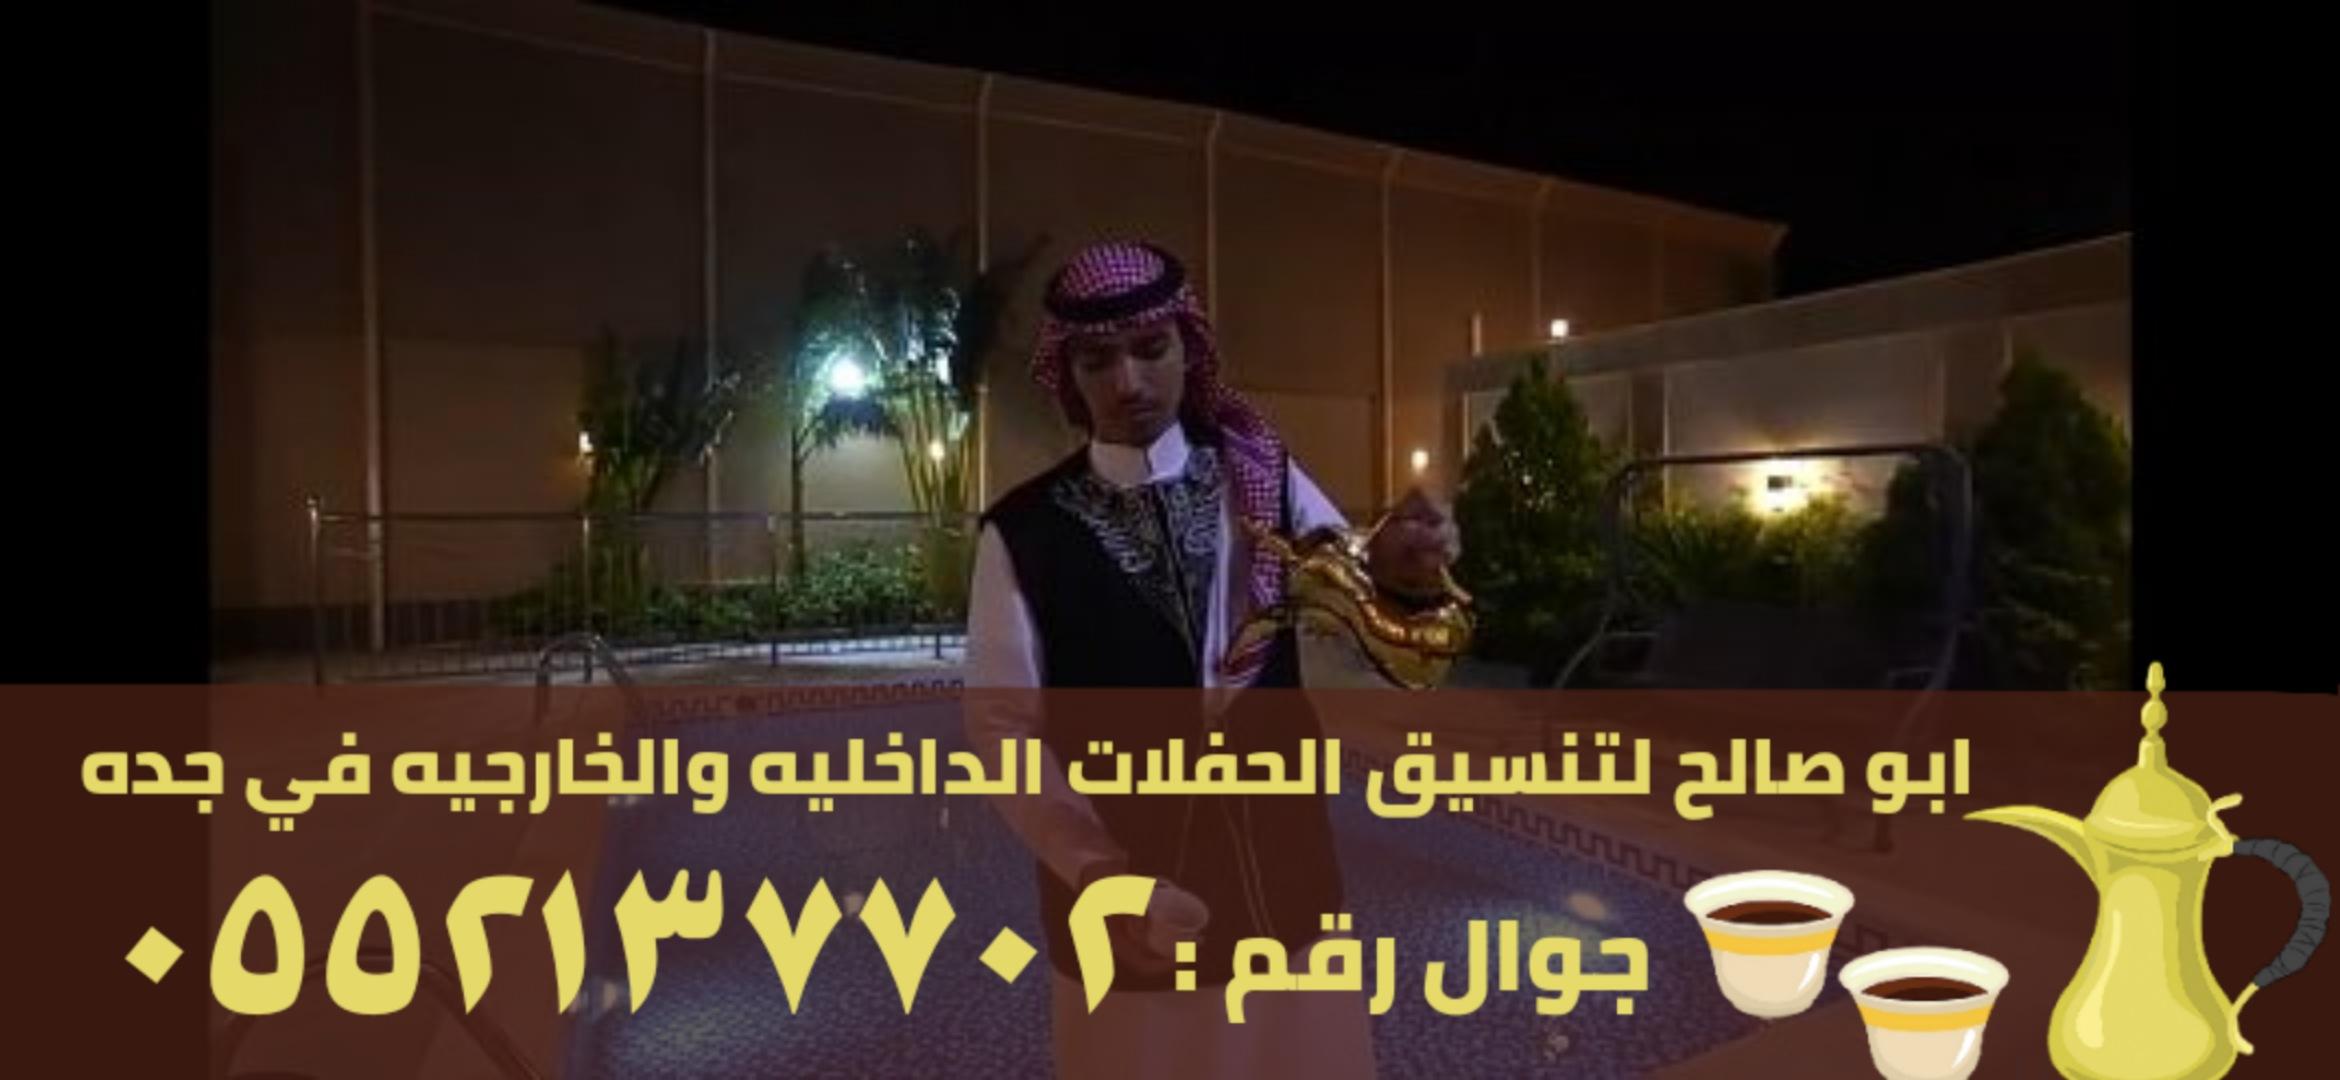 قهوجيين ومباشرين رجال و نساء في جدة , 0552137702 781844159